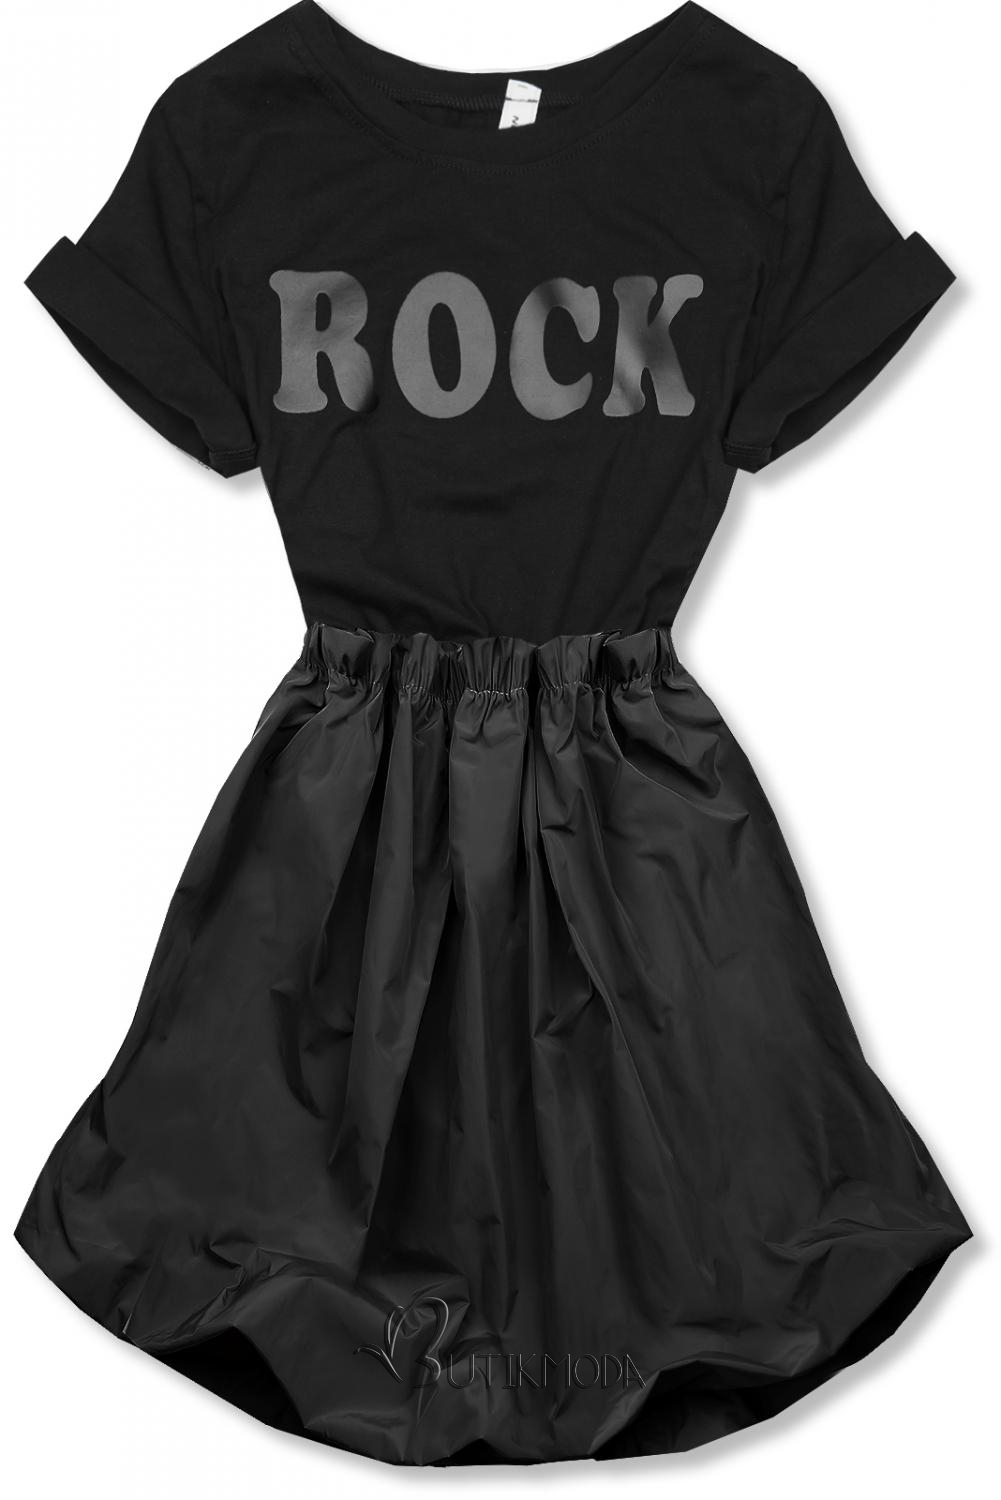 Schwarzes Kleid ROCK